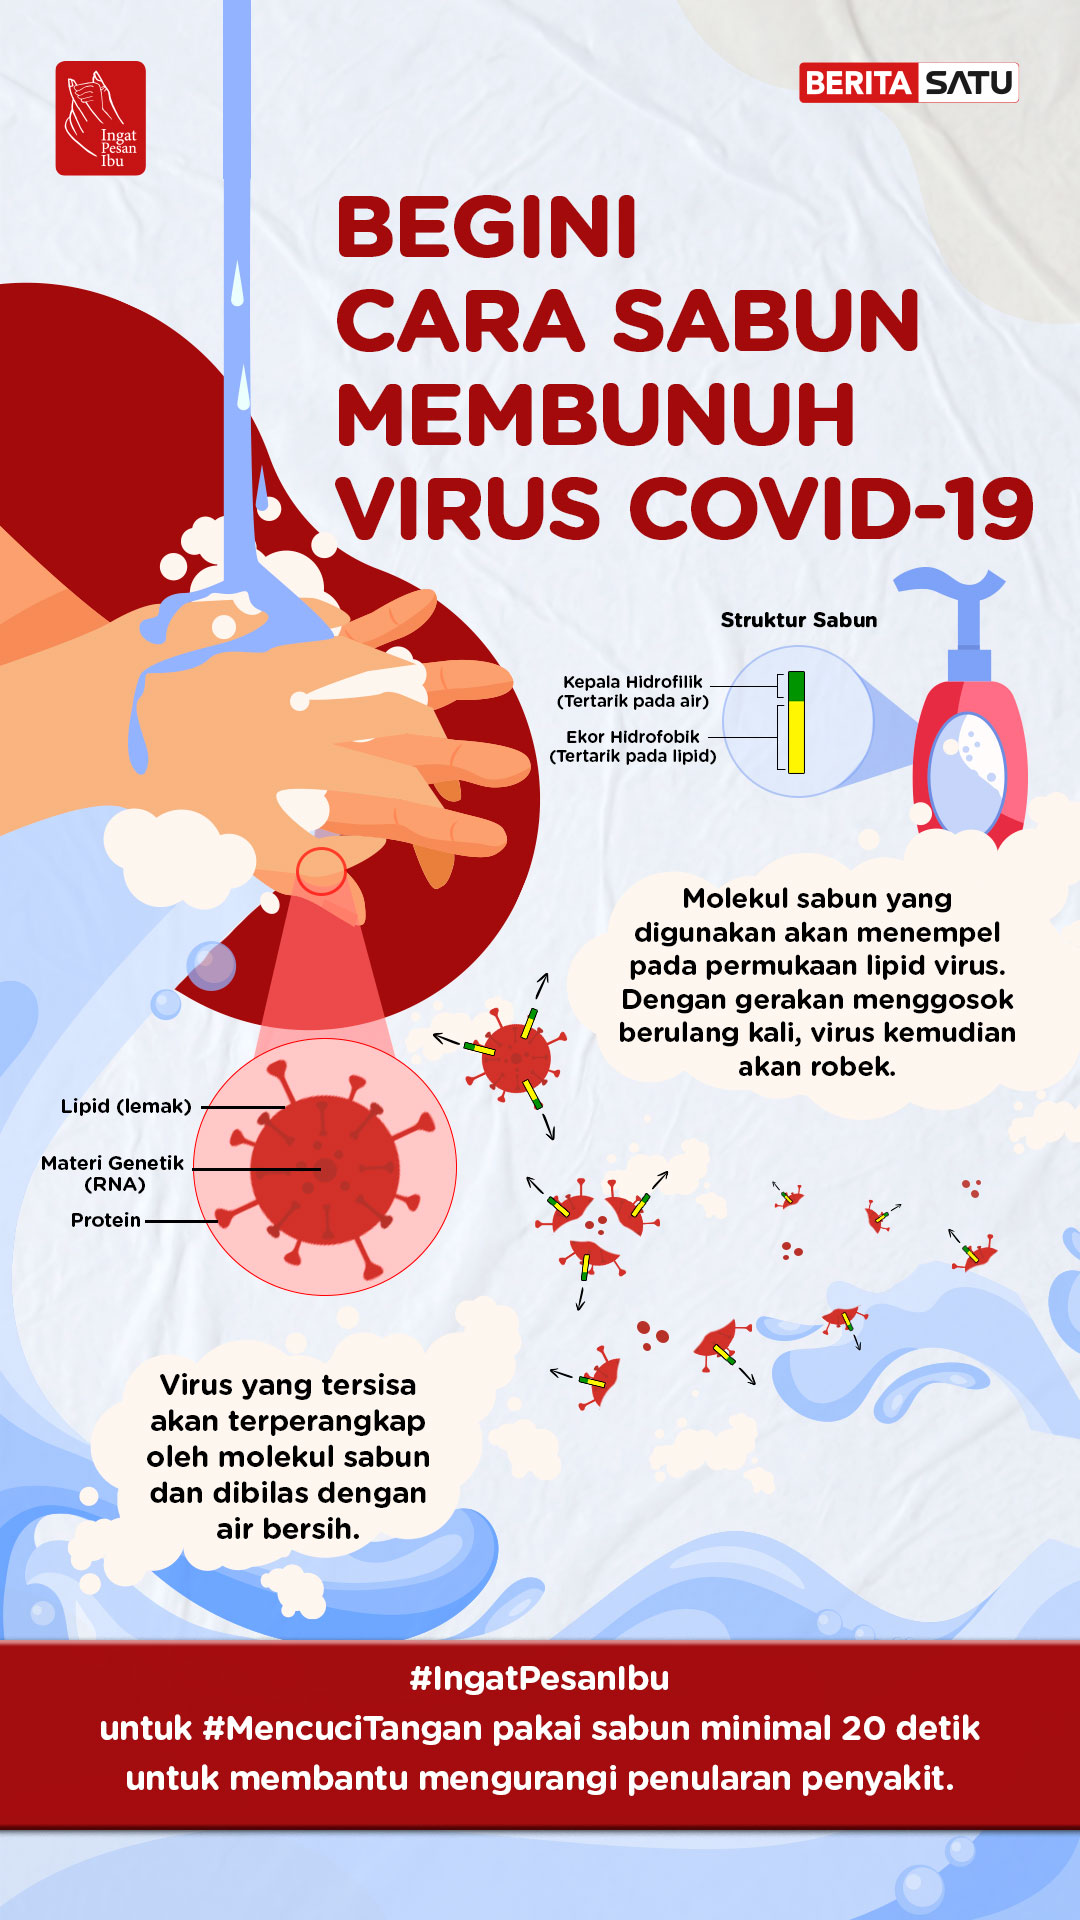 Cuci Tangan Pakai Sabun Membunuh Virus Covid-19